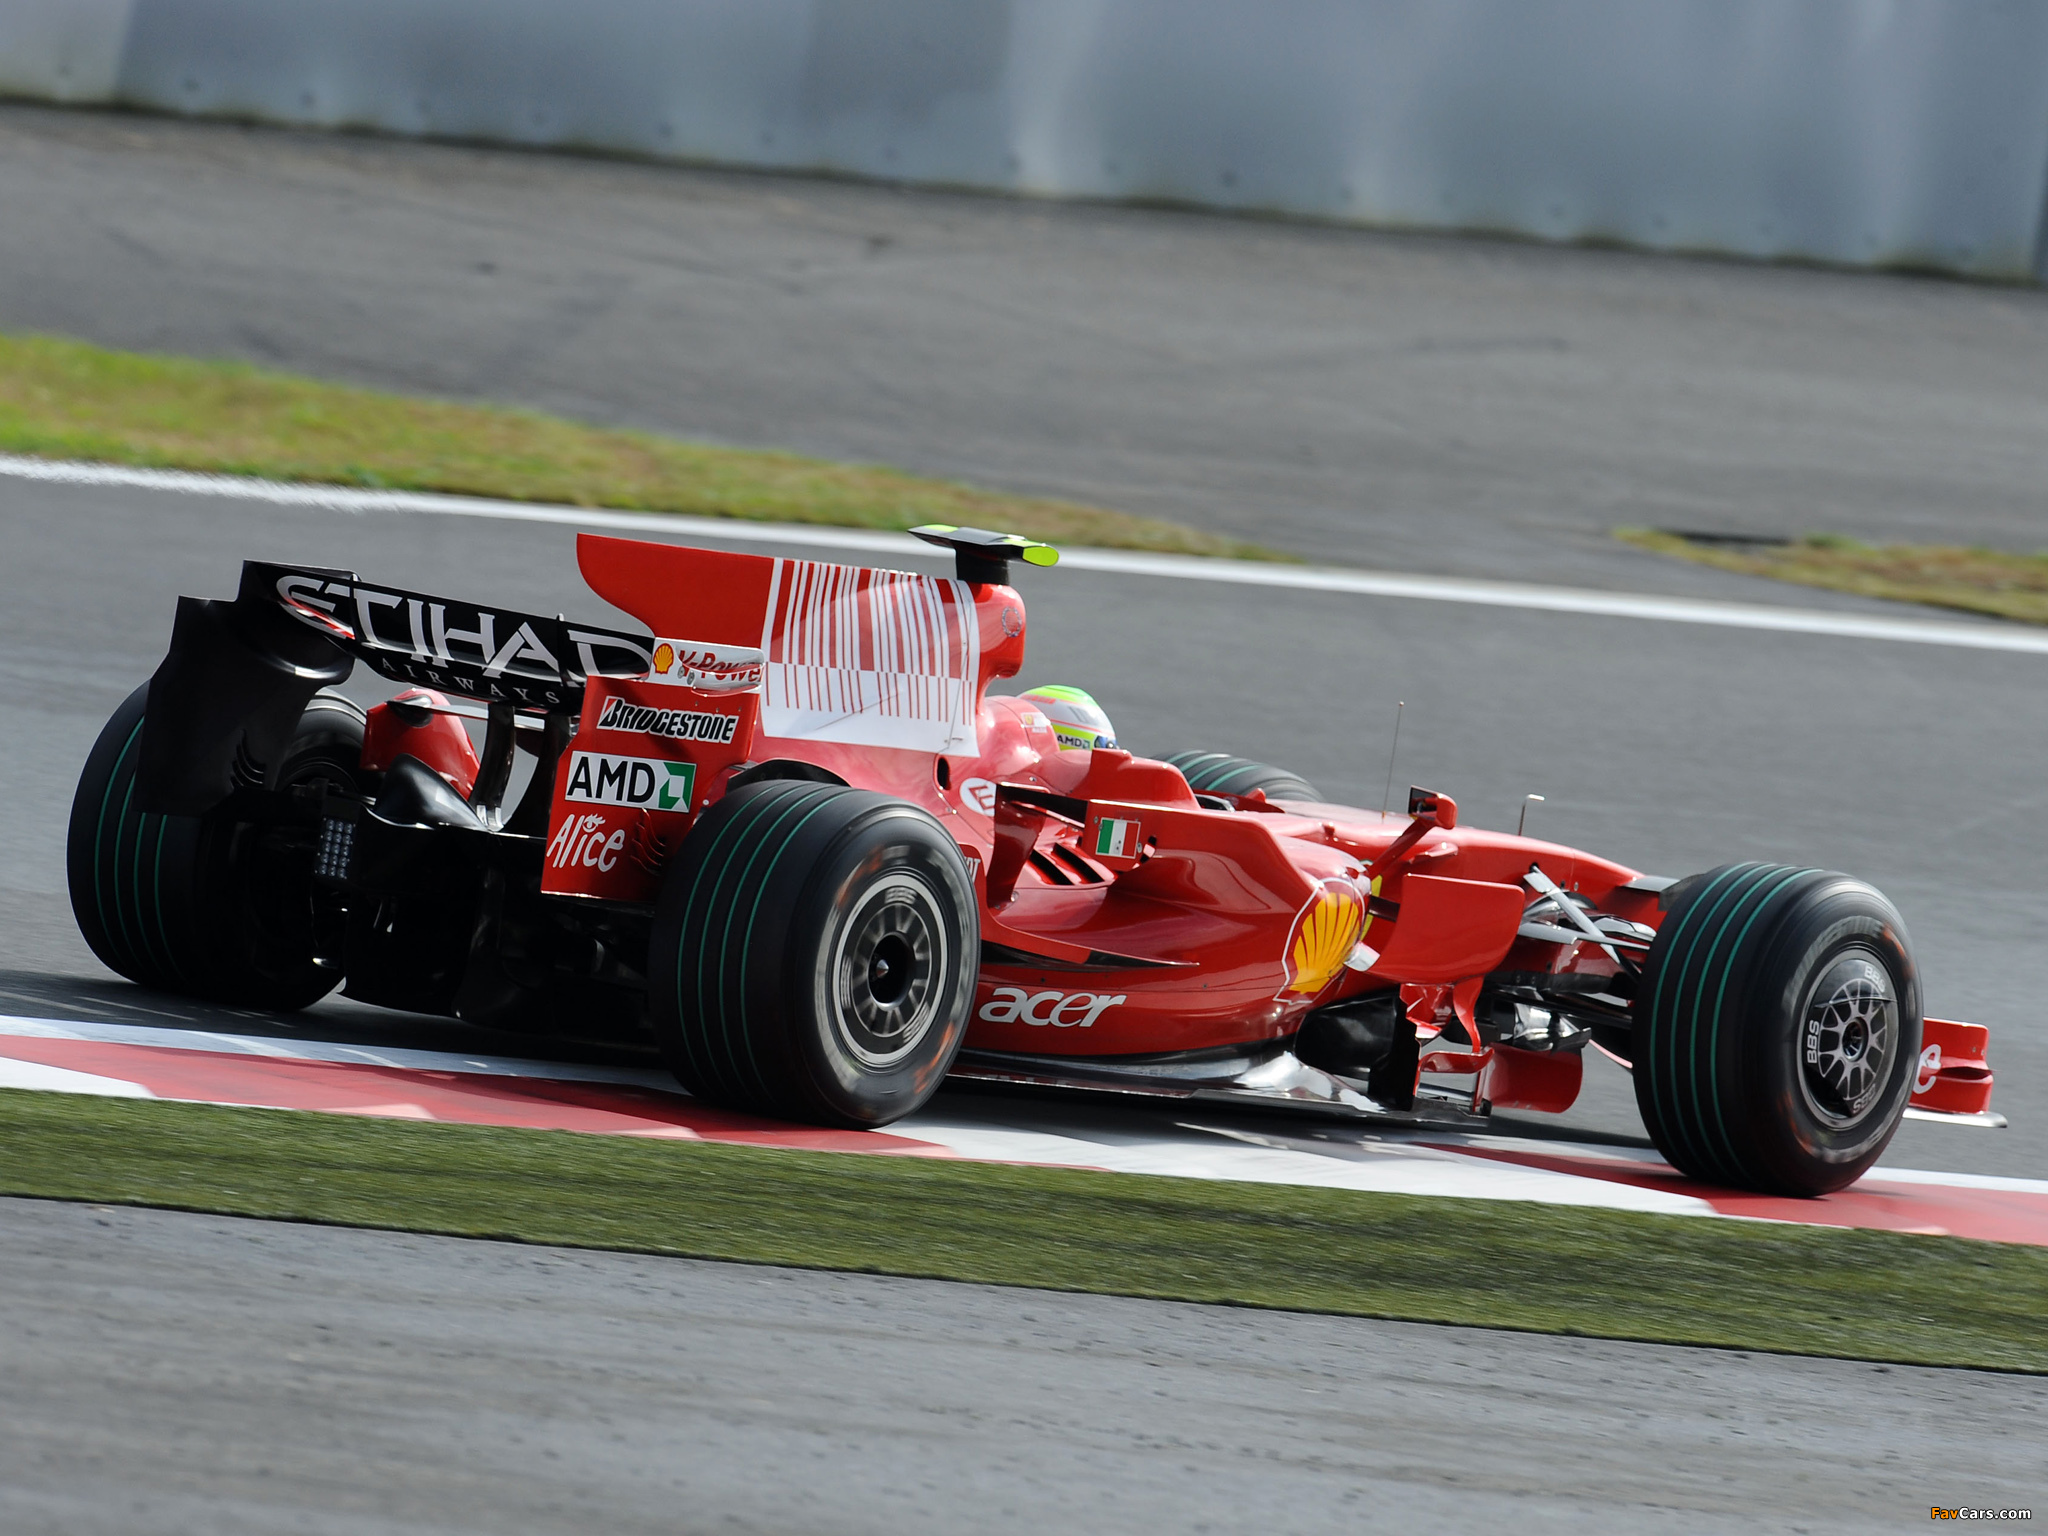 2008 Ferrari F2008